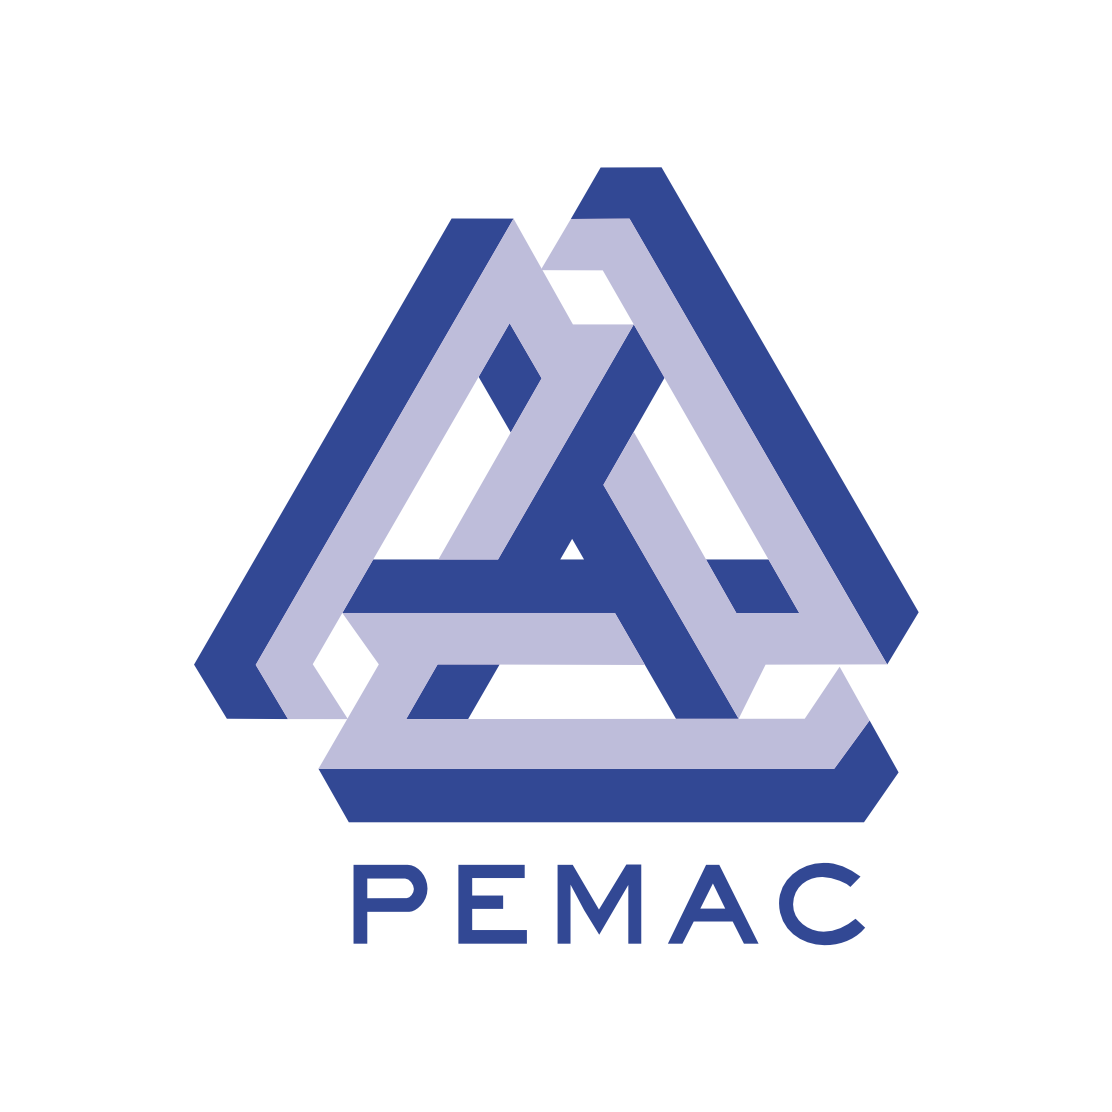 PEMAC logo